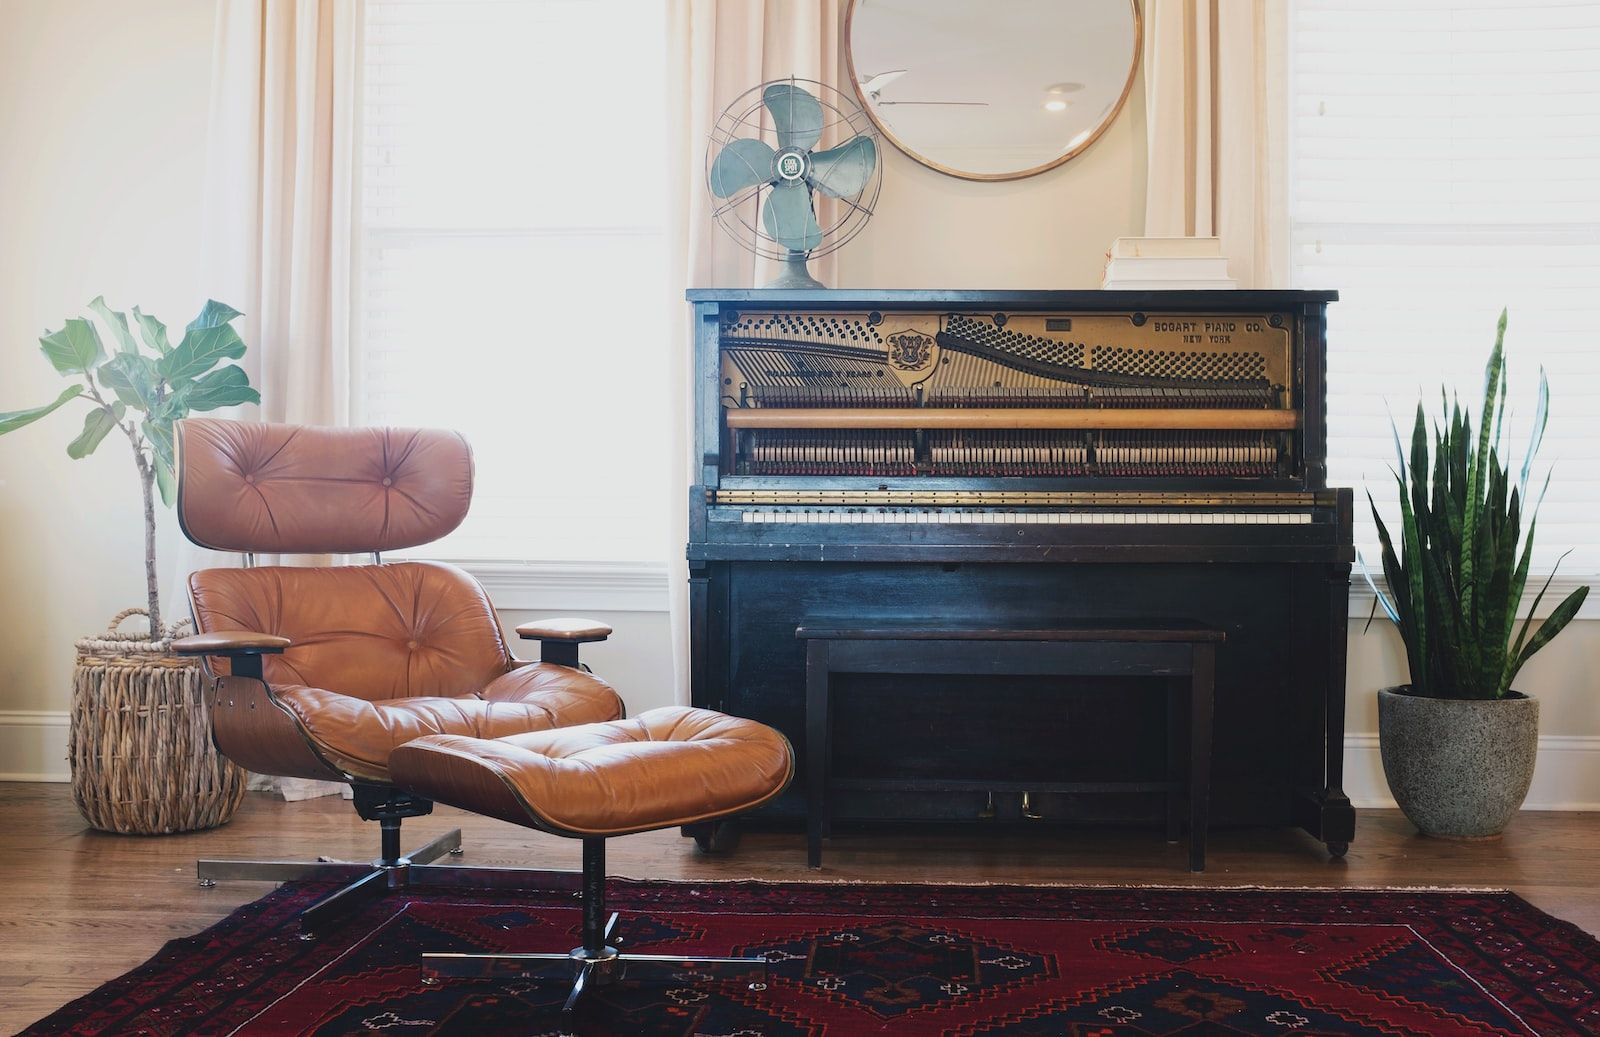 Salon clair et crème avec un vieux piano, un ventilateur et des plantes